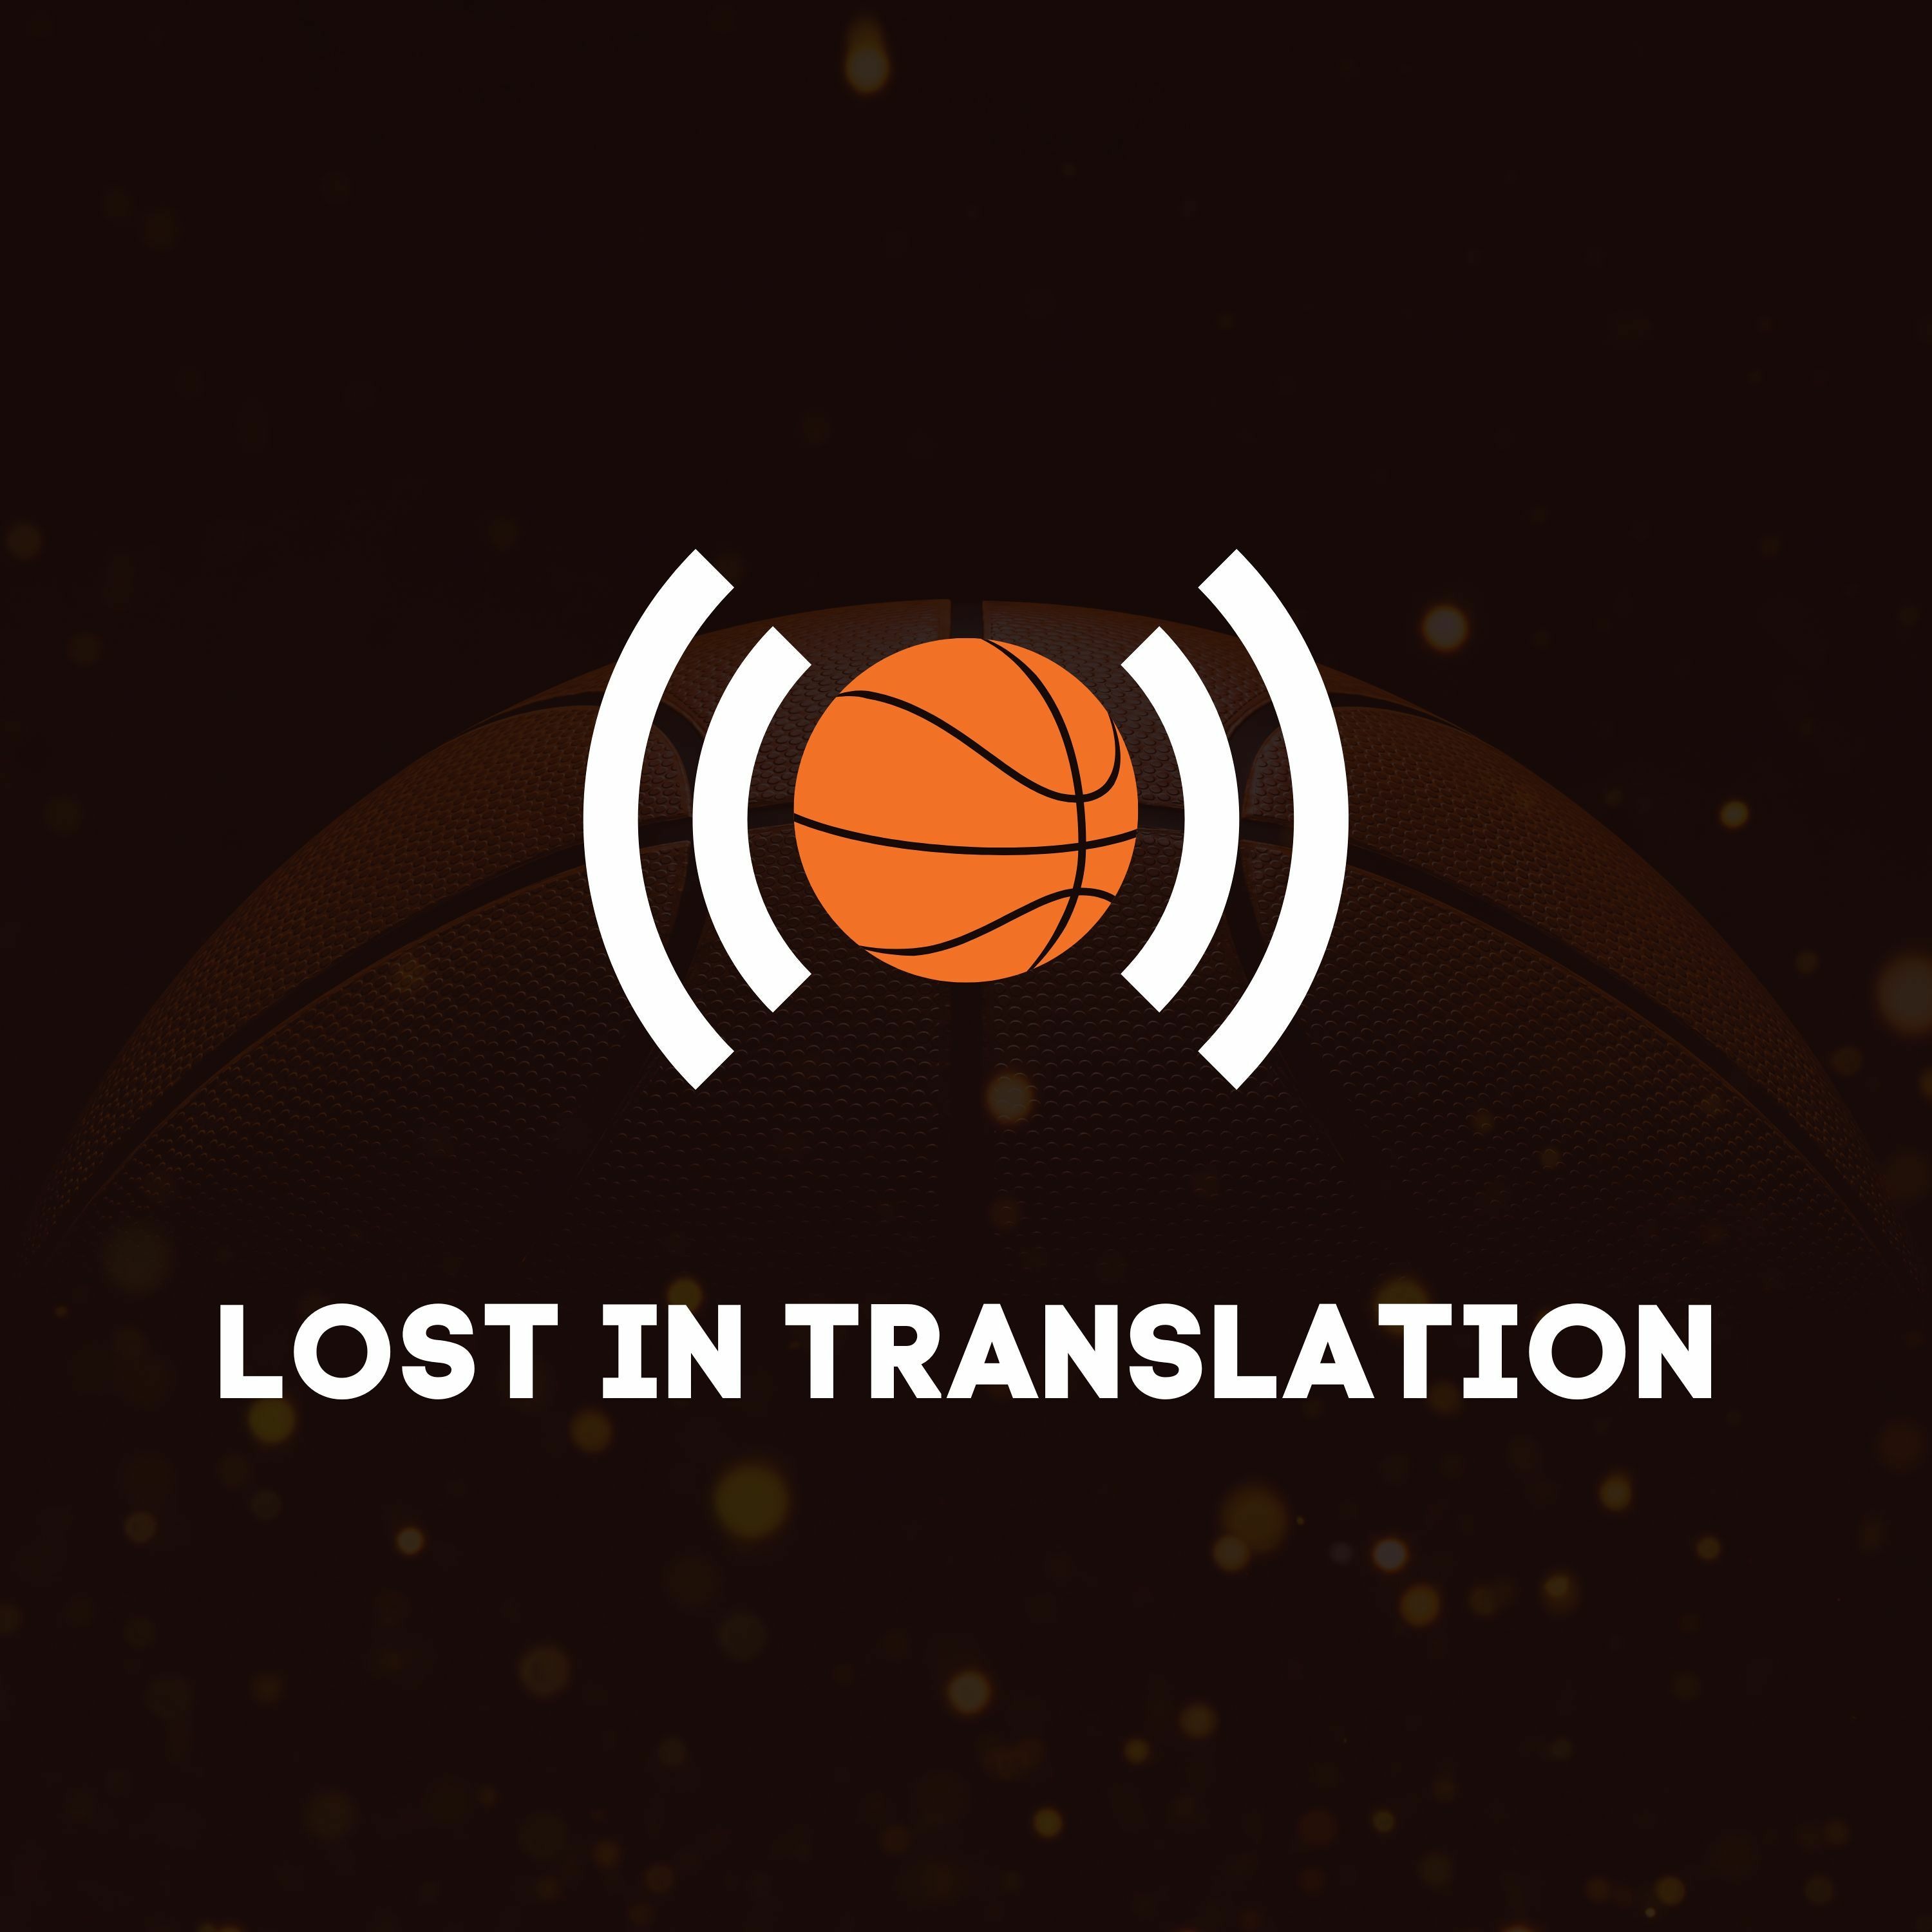 Lost in Translation Episode 24 - Alvin Abreu